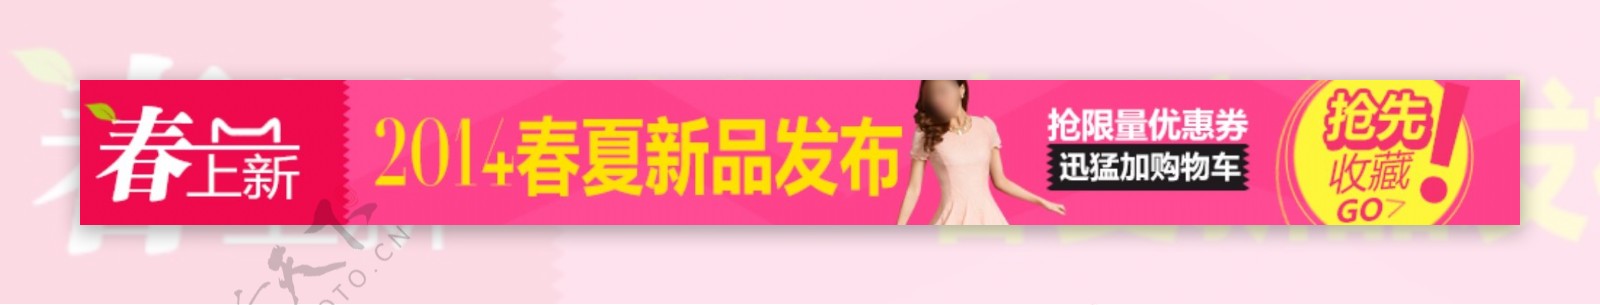 春夏新品发布淘宝女装海报素材下载